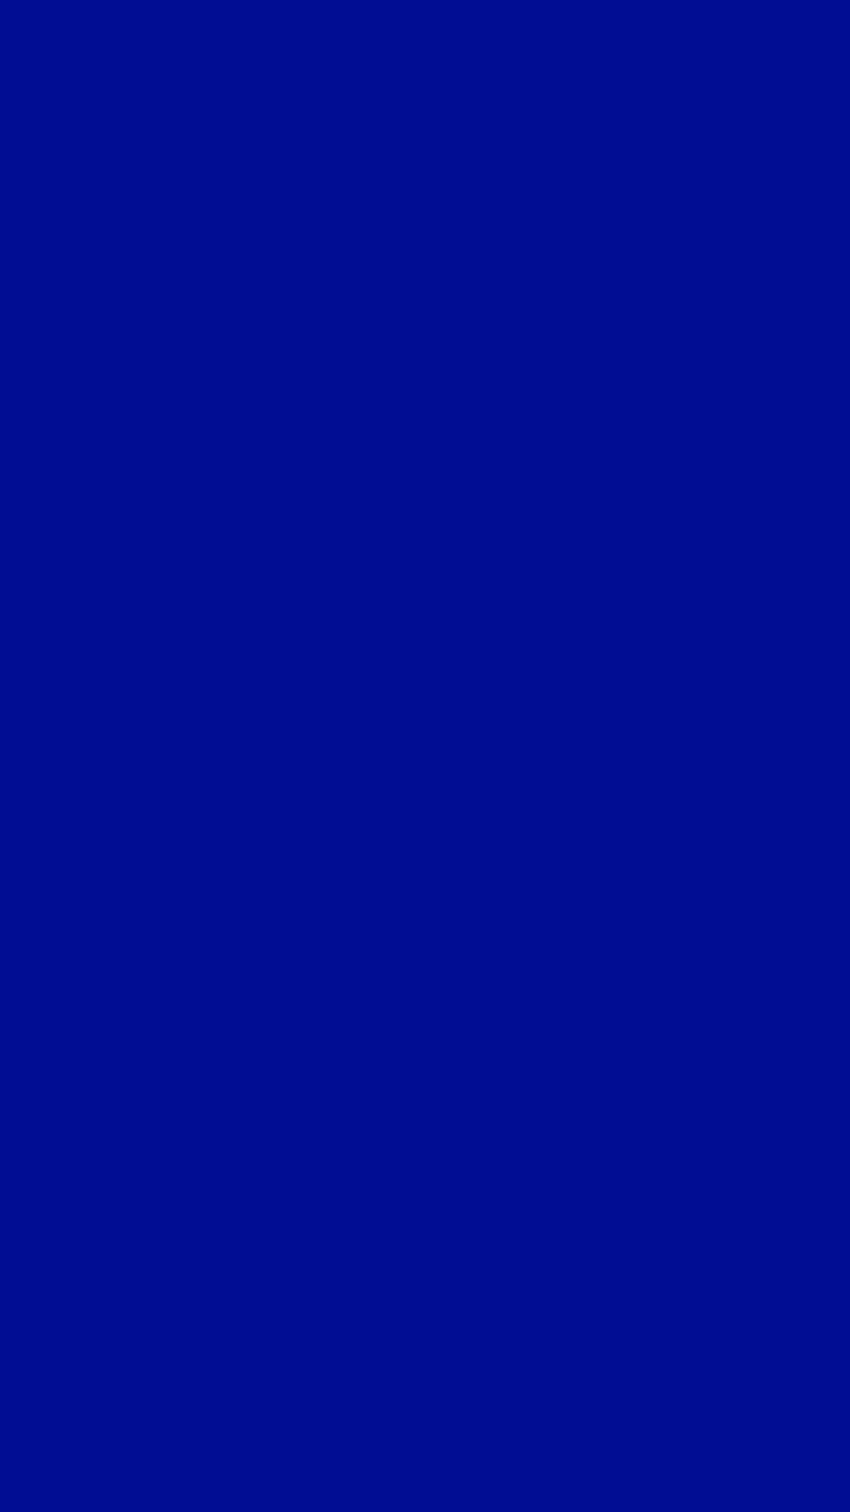 Iphone azul oscuro, color liso fondo de pantalla del teléfono